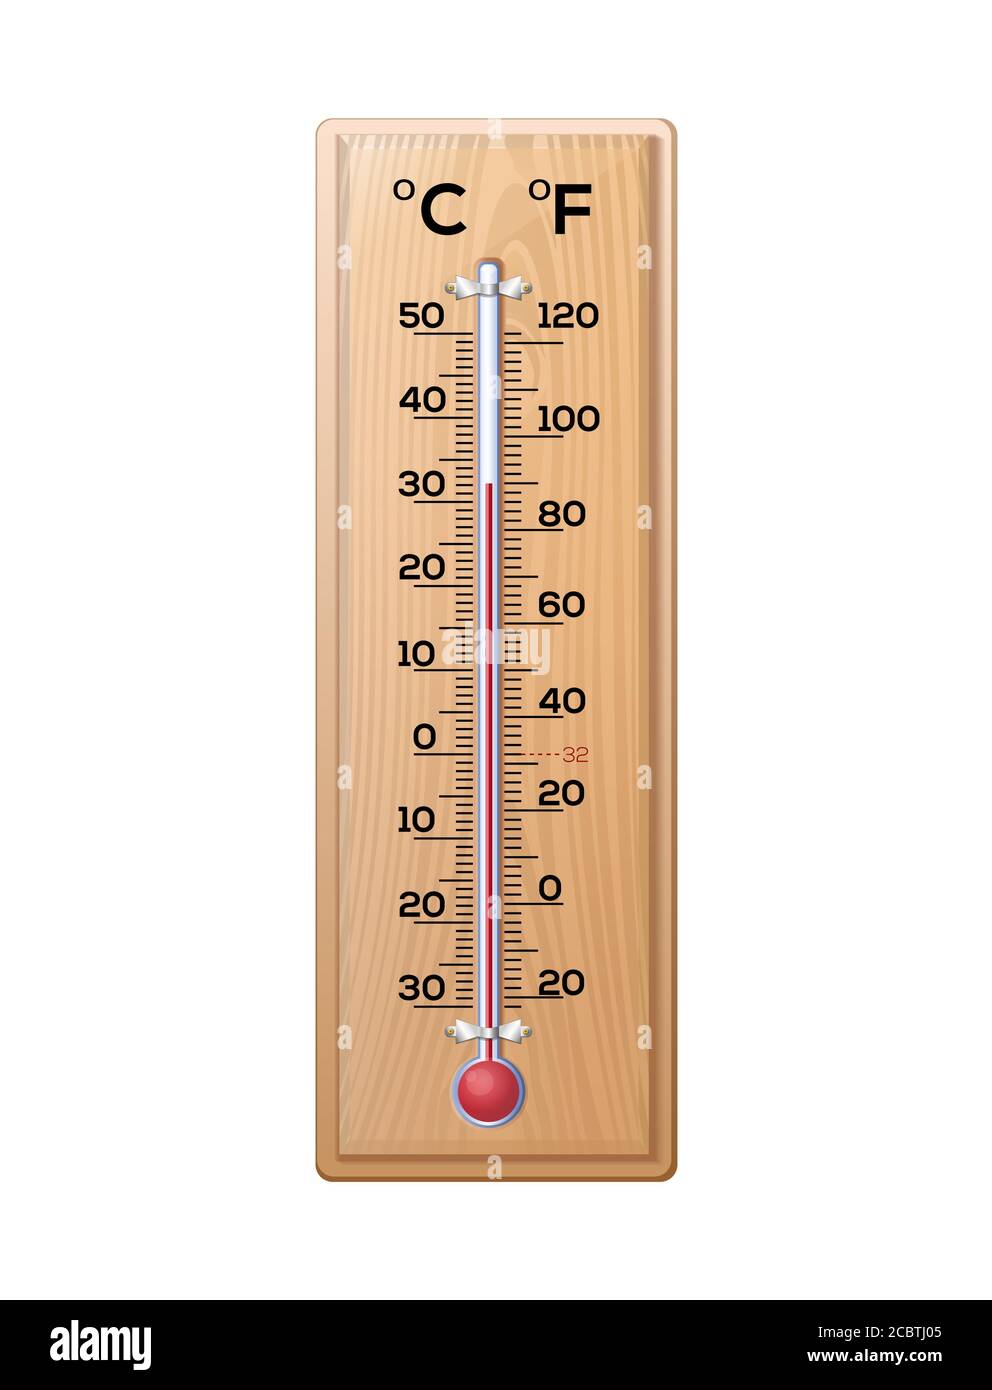 Thermomètre pour mesurer la température de l'air sur un base en bois Image  Vectorielle Stock - Alamy